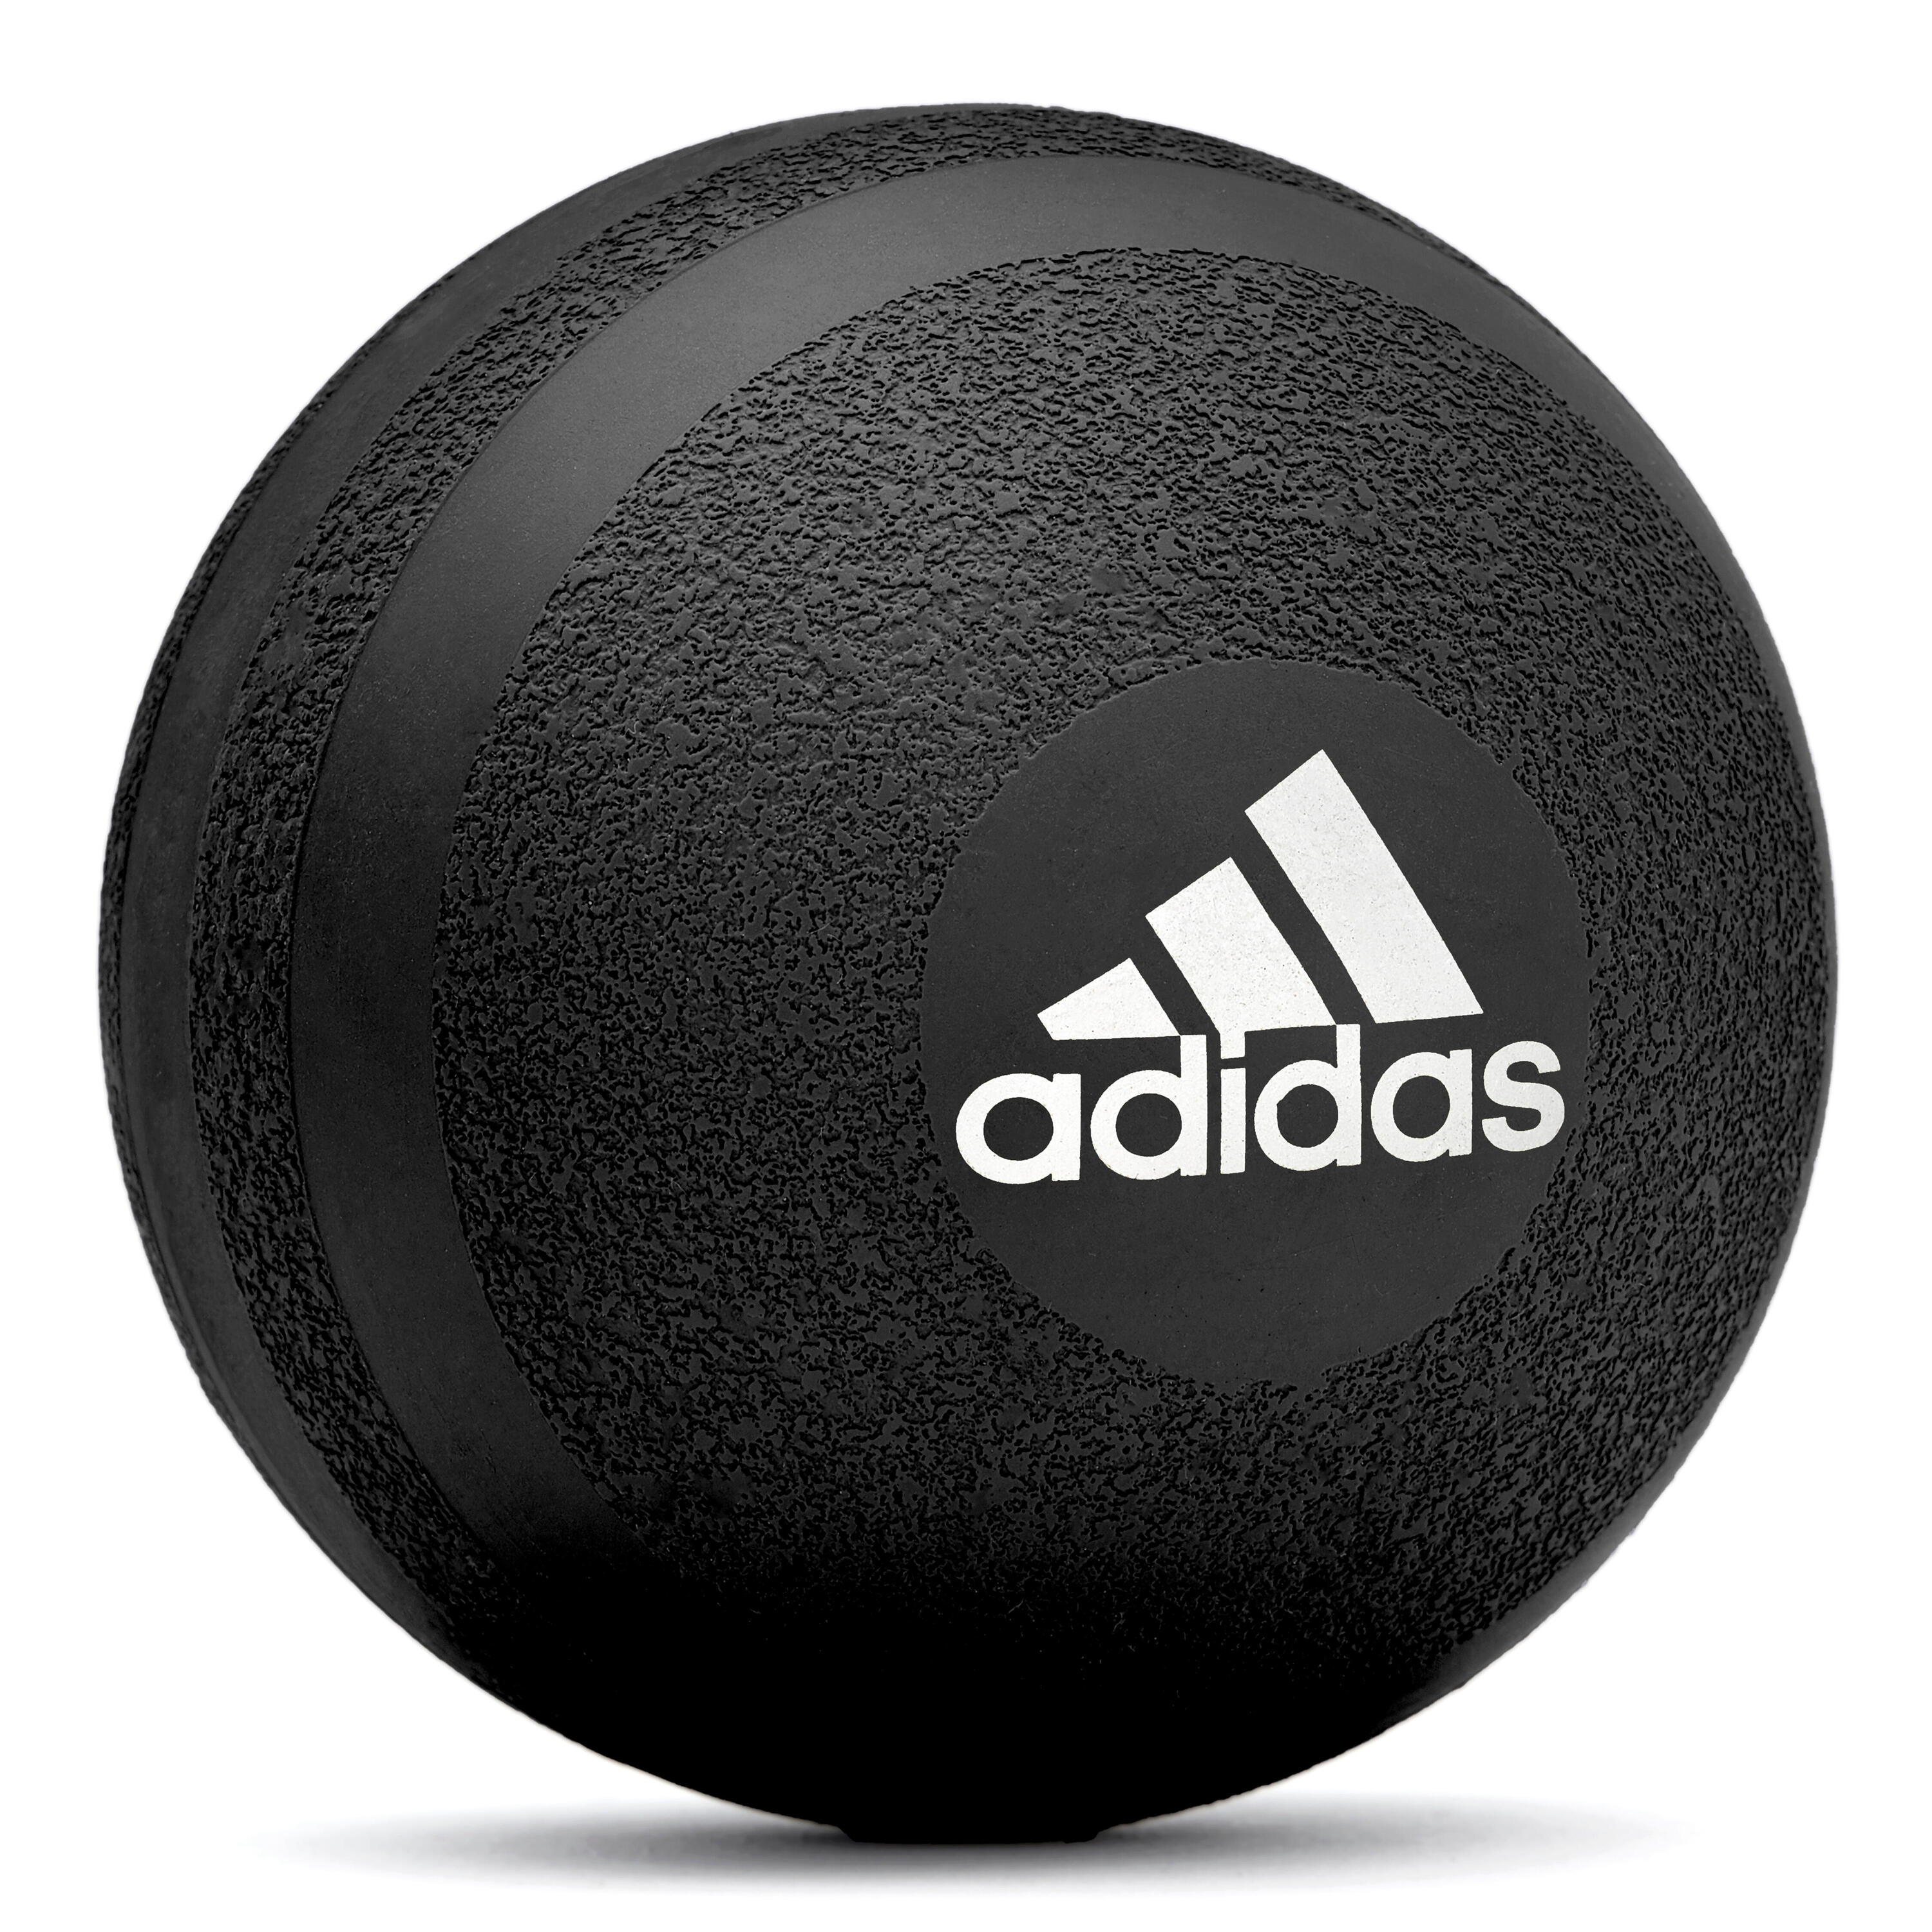 ADIDAS Adidas Massage Roller Ball